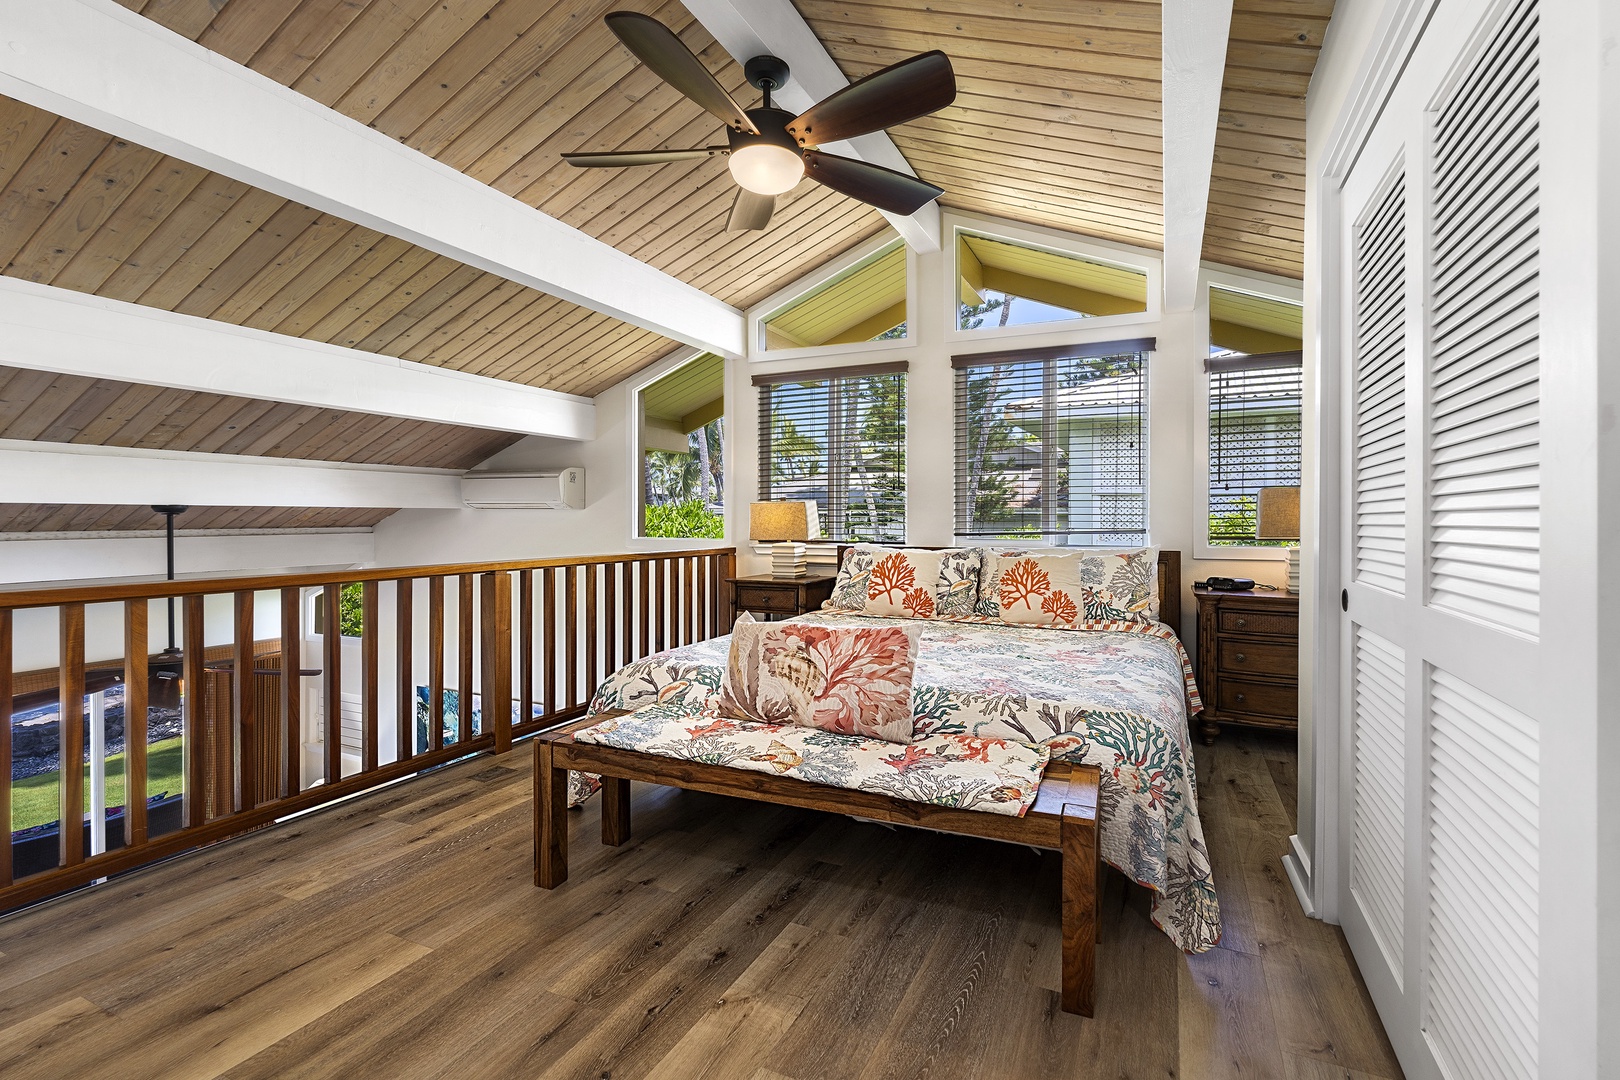 Kailua Kona Vacation Rentals, Hale Pua - Ohana Suite loft bedroom with King bed